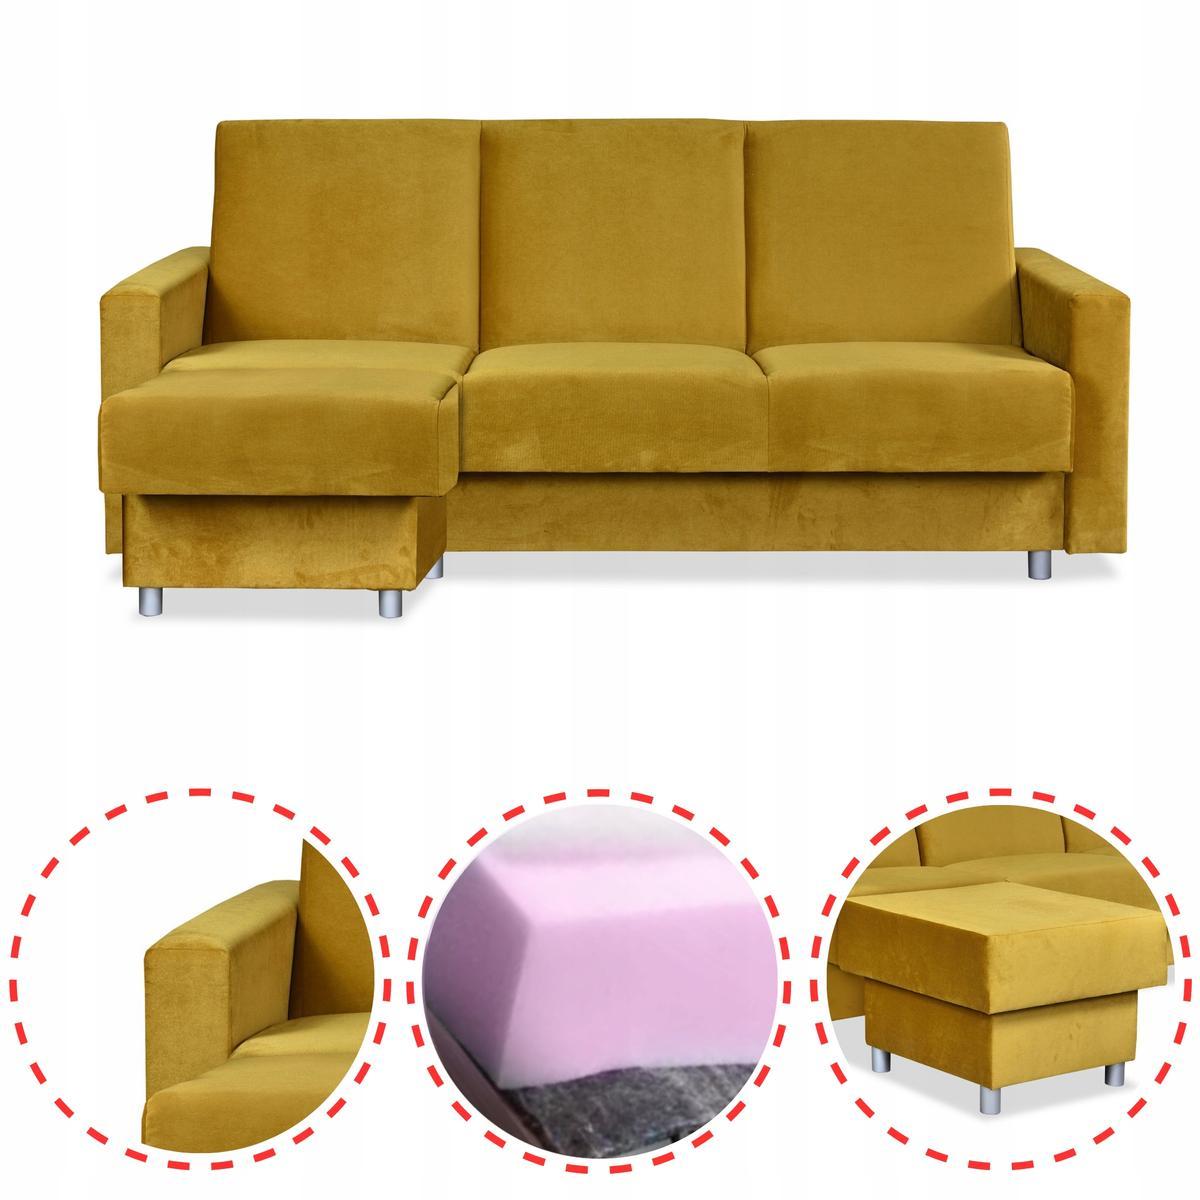 Wersalka Narożnik Alicja z pufą sofa kanapa rozkładana Family Meble żółta nr. 2